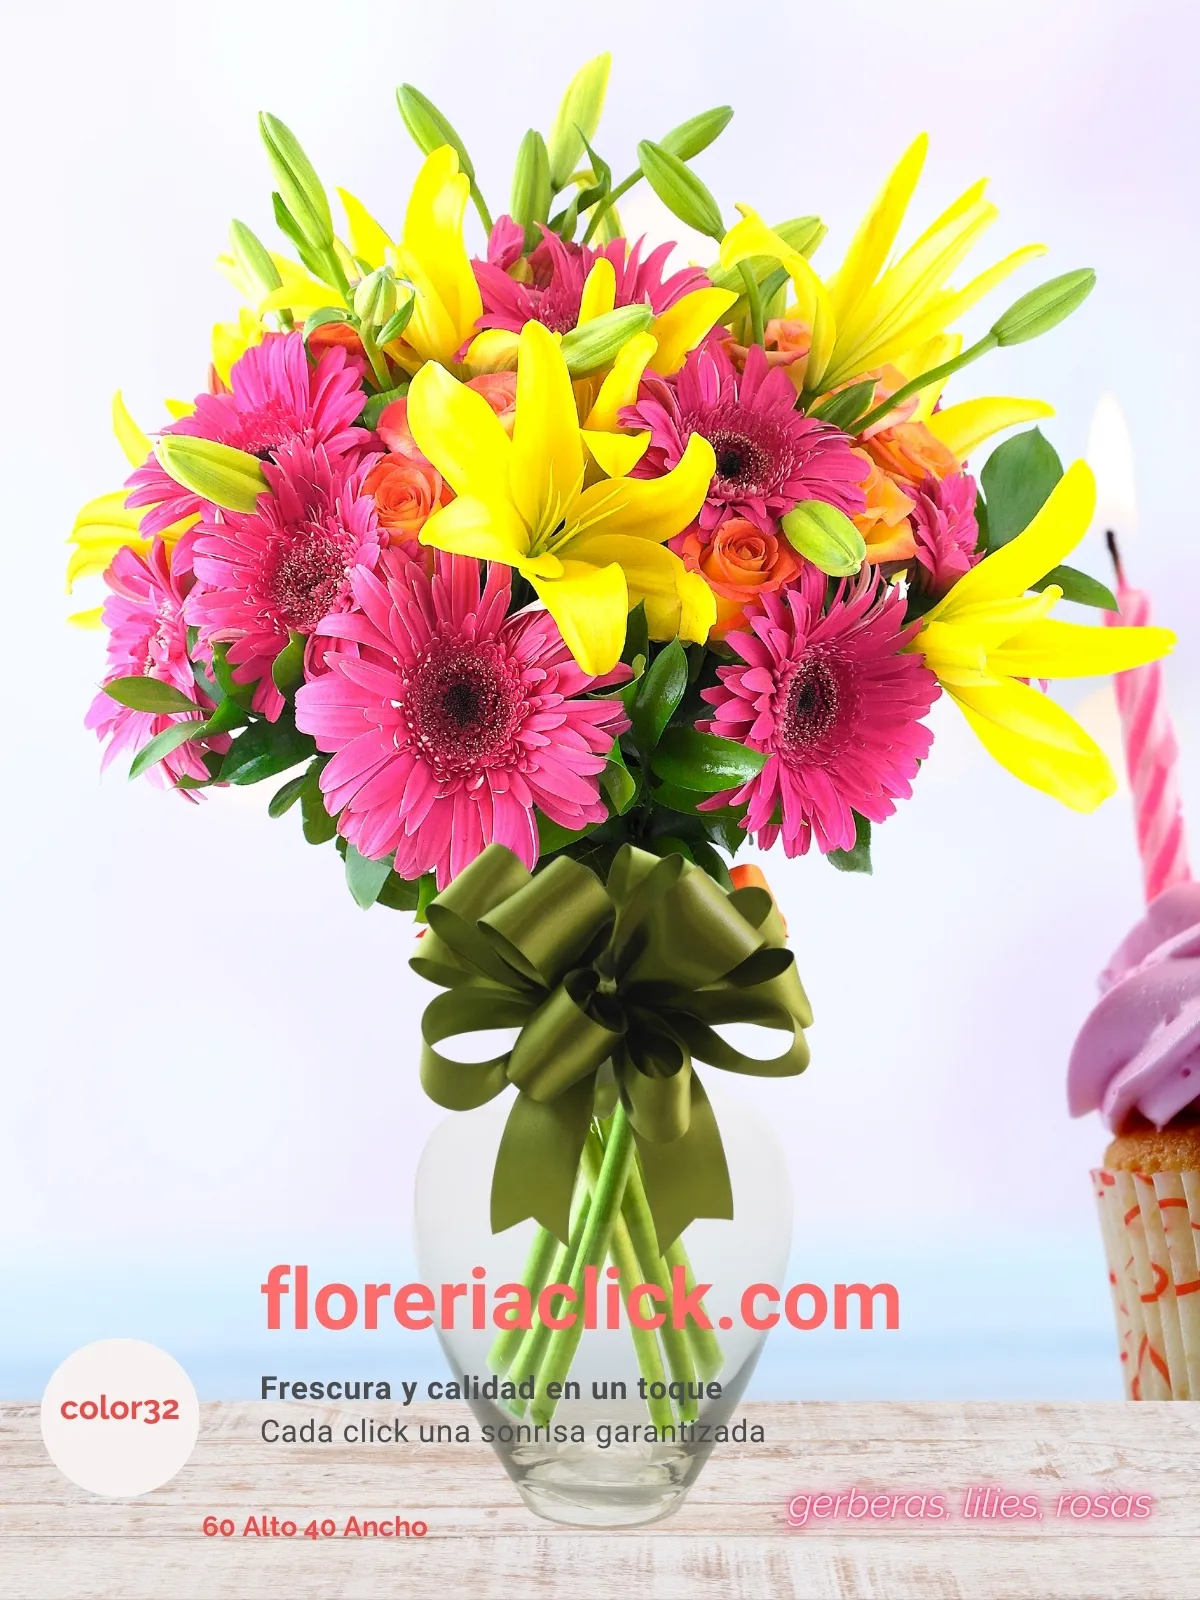 Bouquet de 33 flores frescas en tonos vibrantes: gerberas, lilies y rosas.